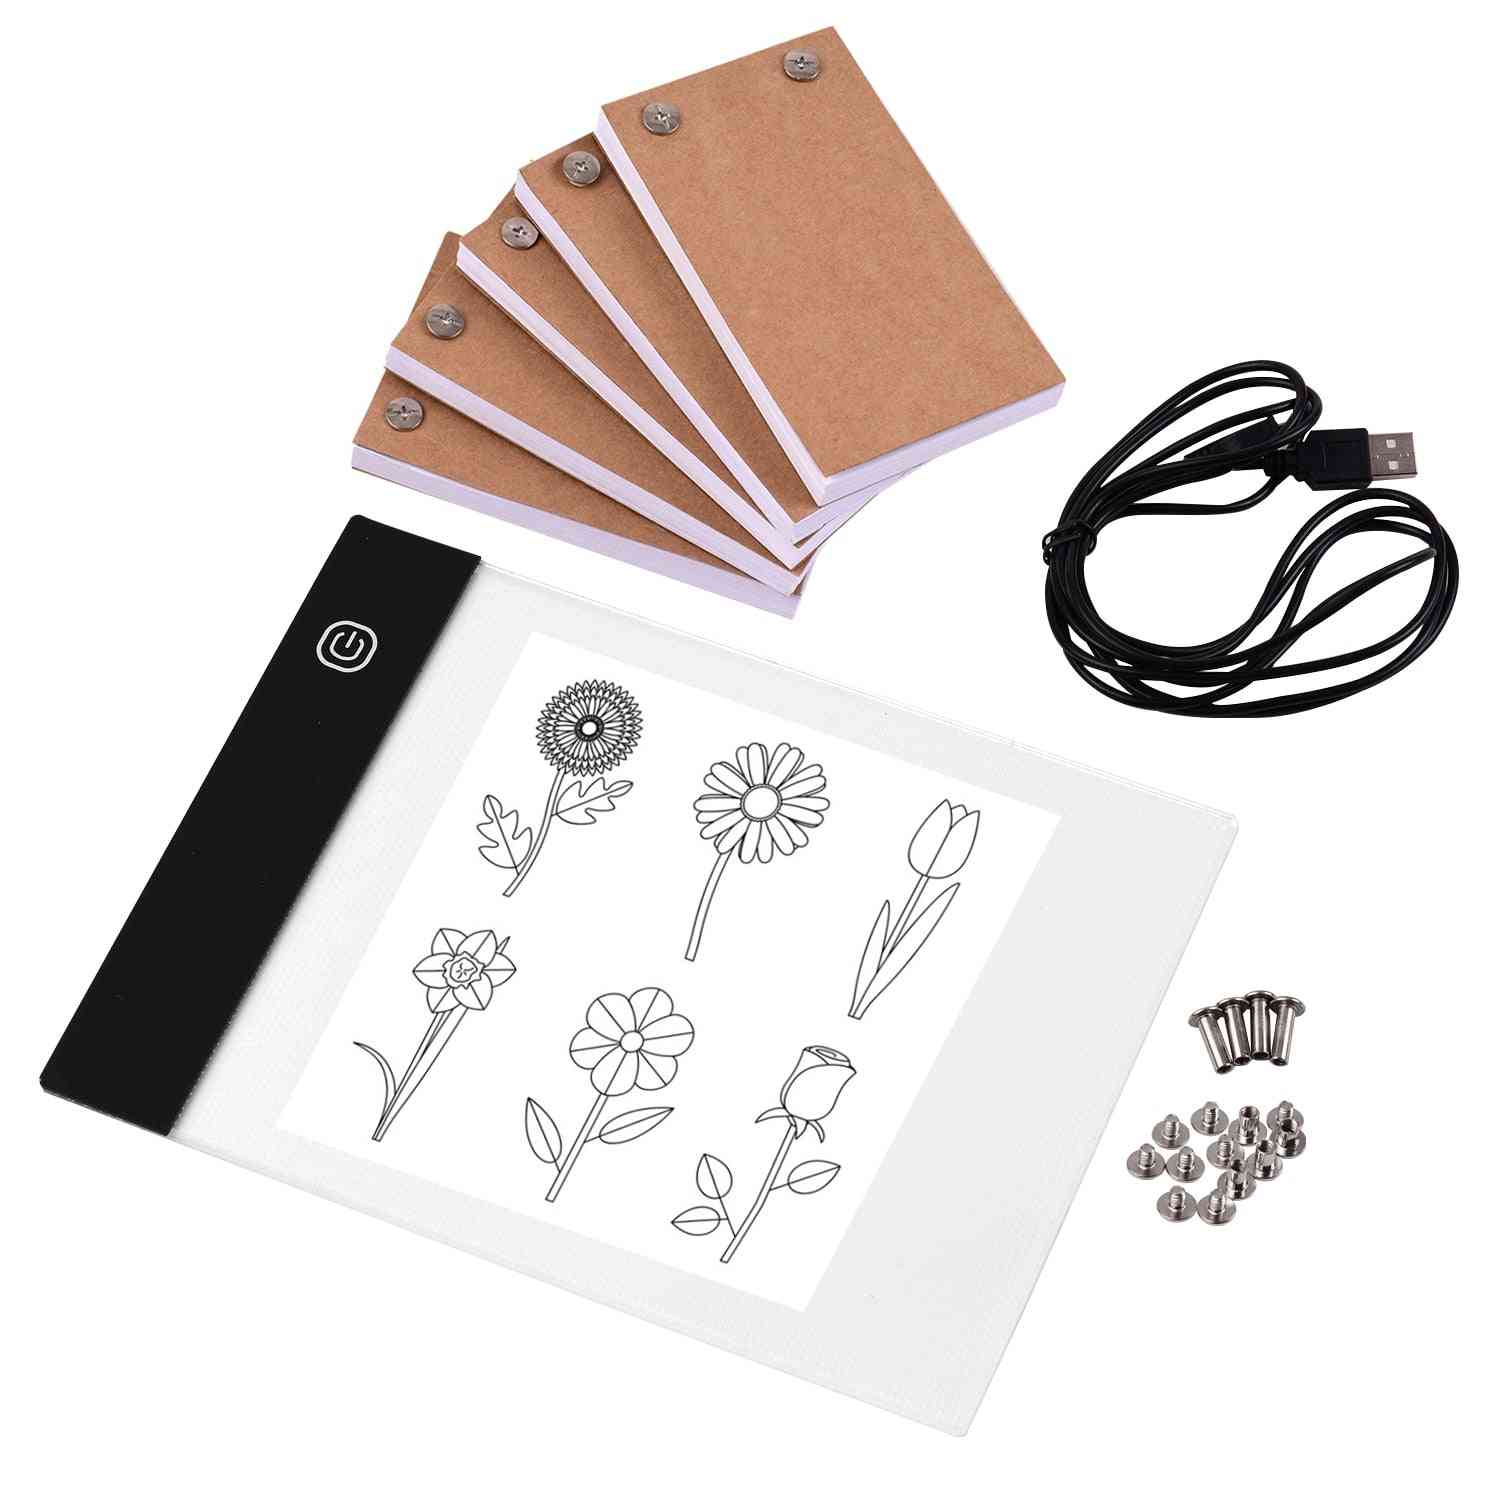 Portable- Flip Book Kit, Light Pad